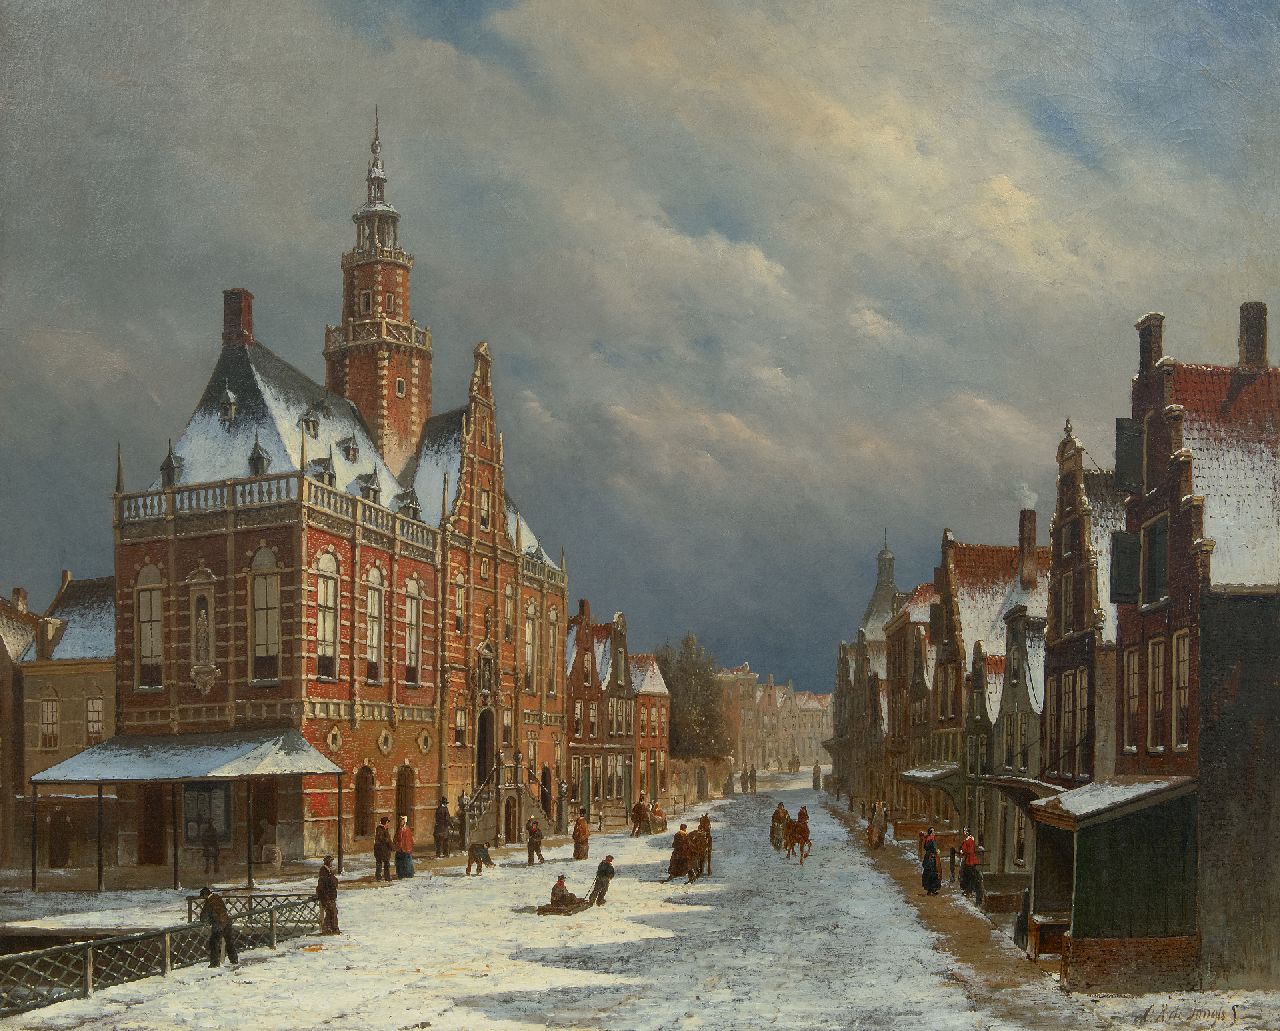 Jongh O.R. de | Oene Romkes de Jongh, The townhall of Bolsward, Friesland, in wintertime, oil on canvas 69.9 x 86.0 cm, signed l.r.